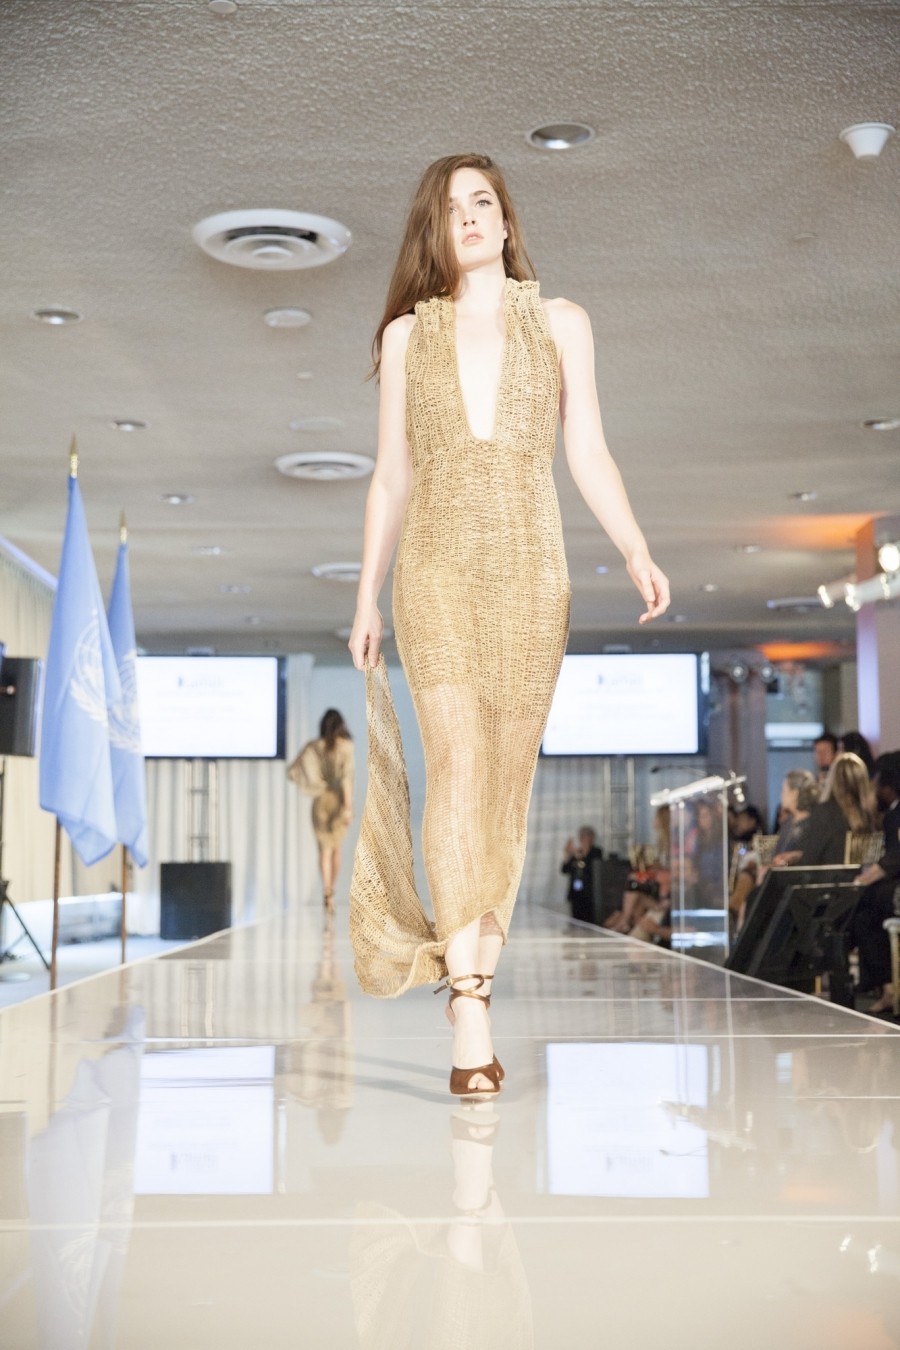 A bilum dress worn by a model on a runway